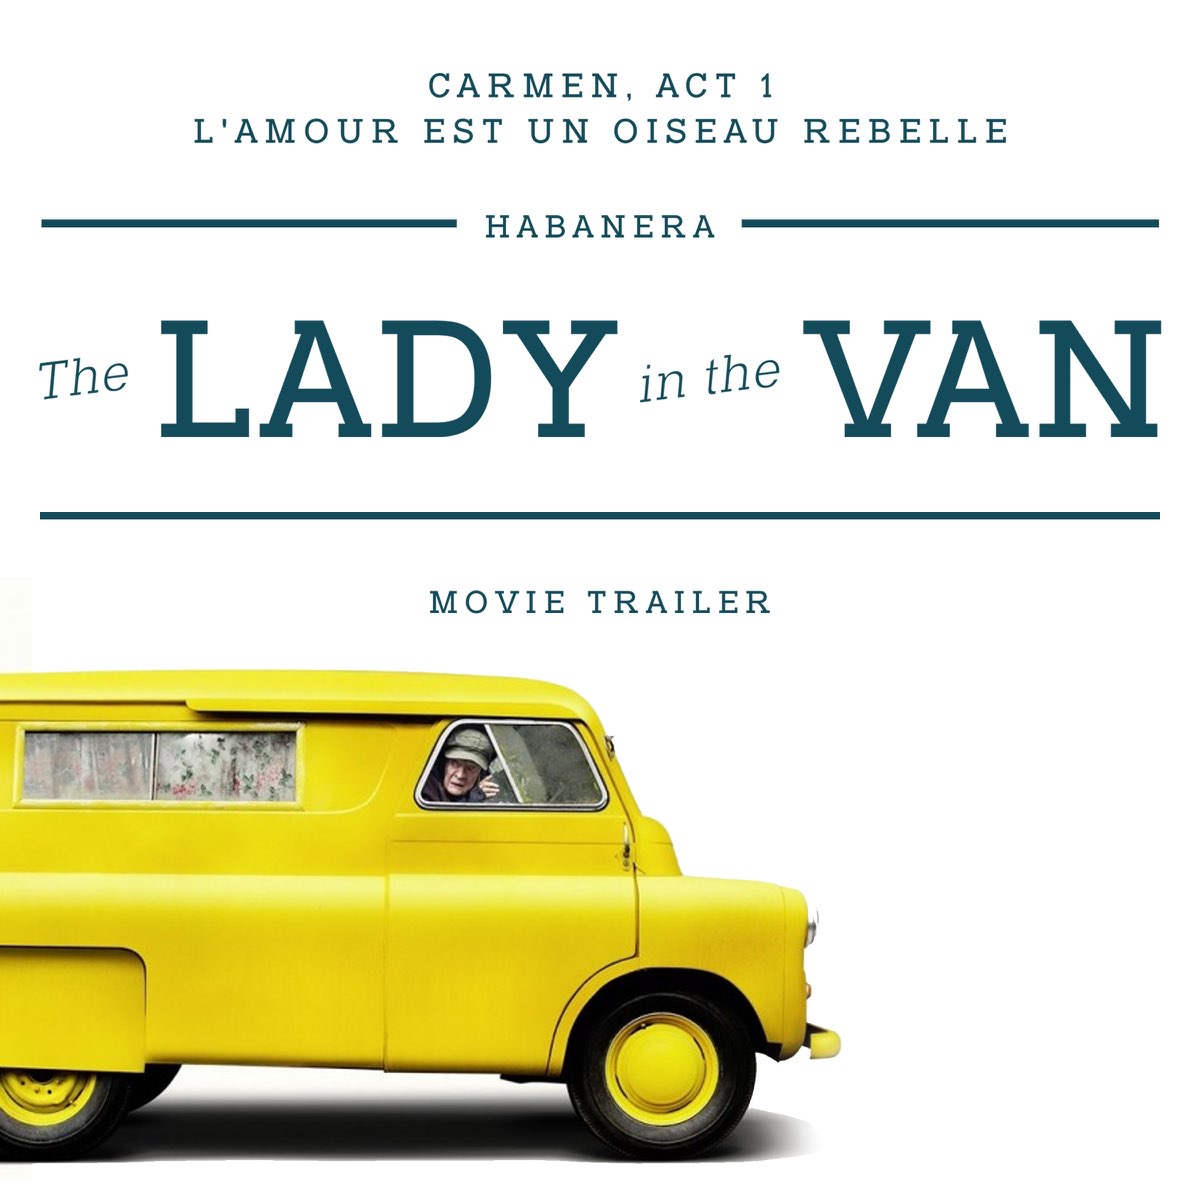 Lady In The Van Full Movie